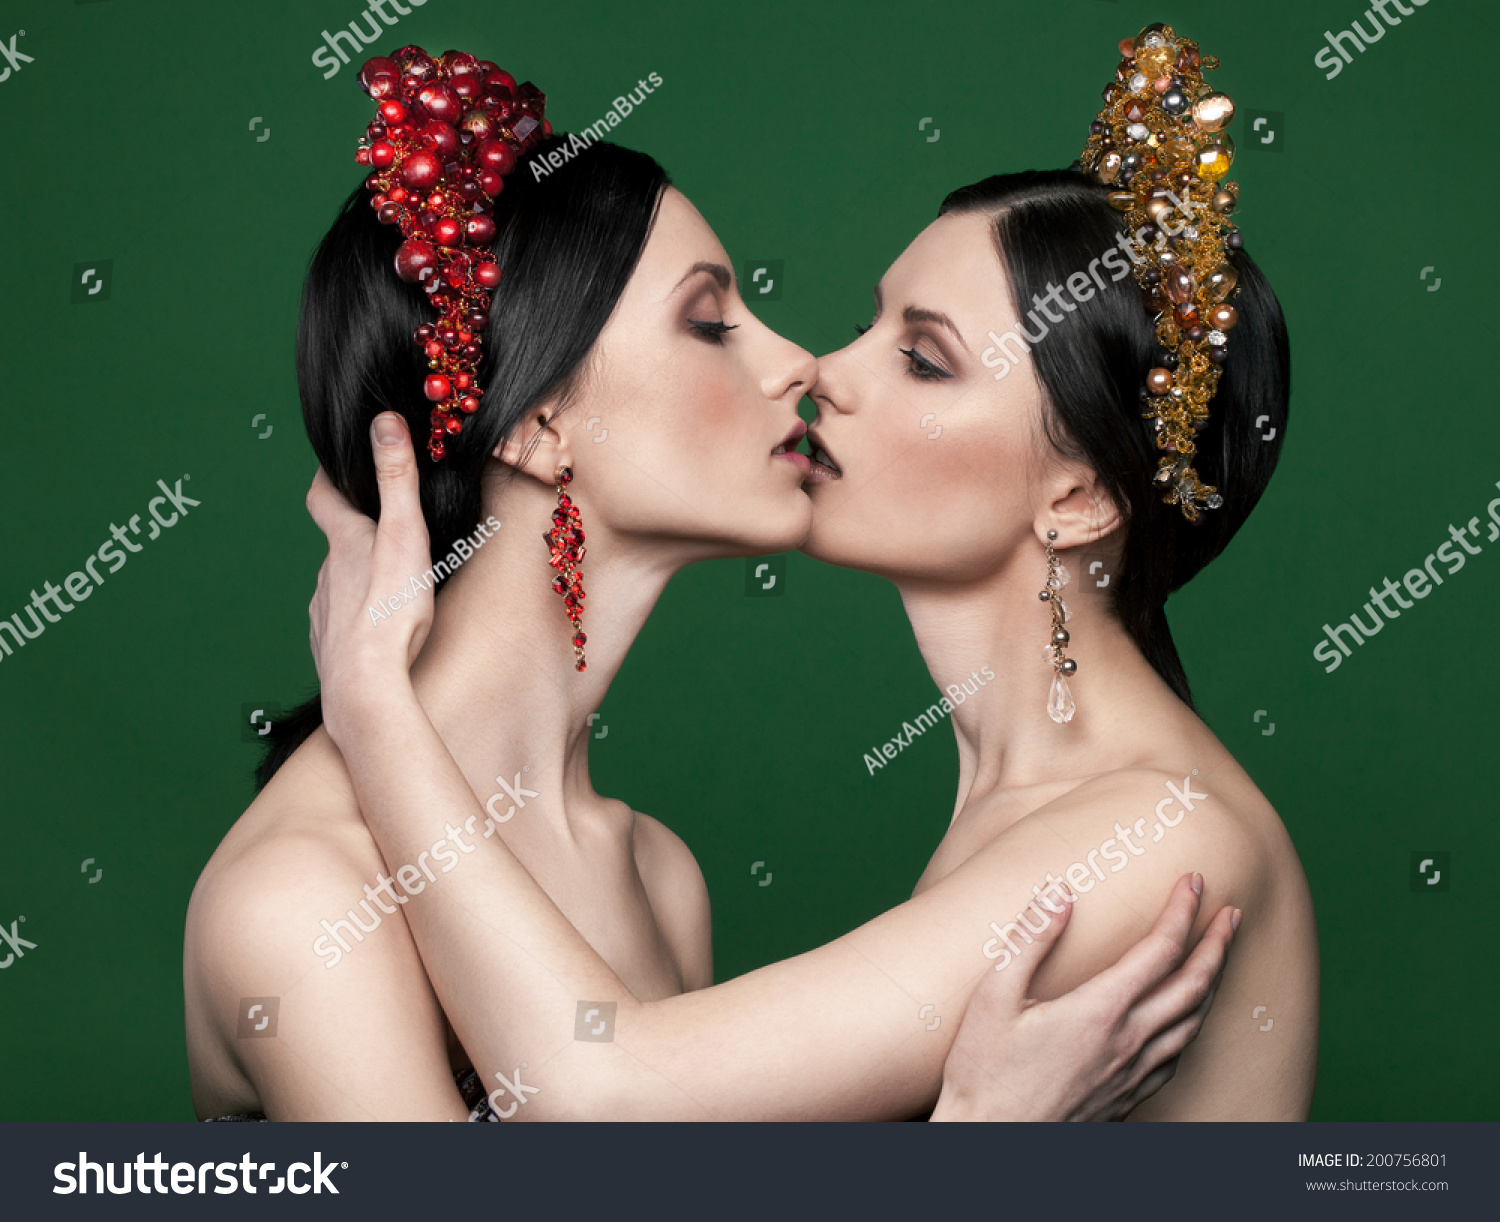 Twin Sisters Kissing Each Other: стоковые изображения в HD и миллионы други...